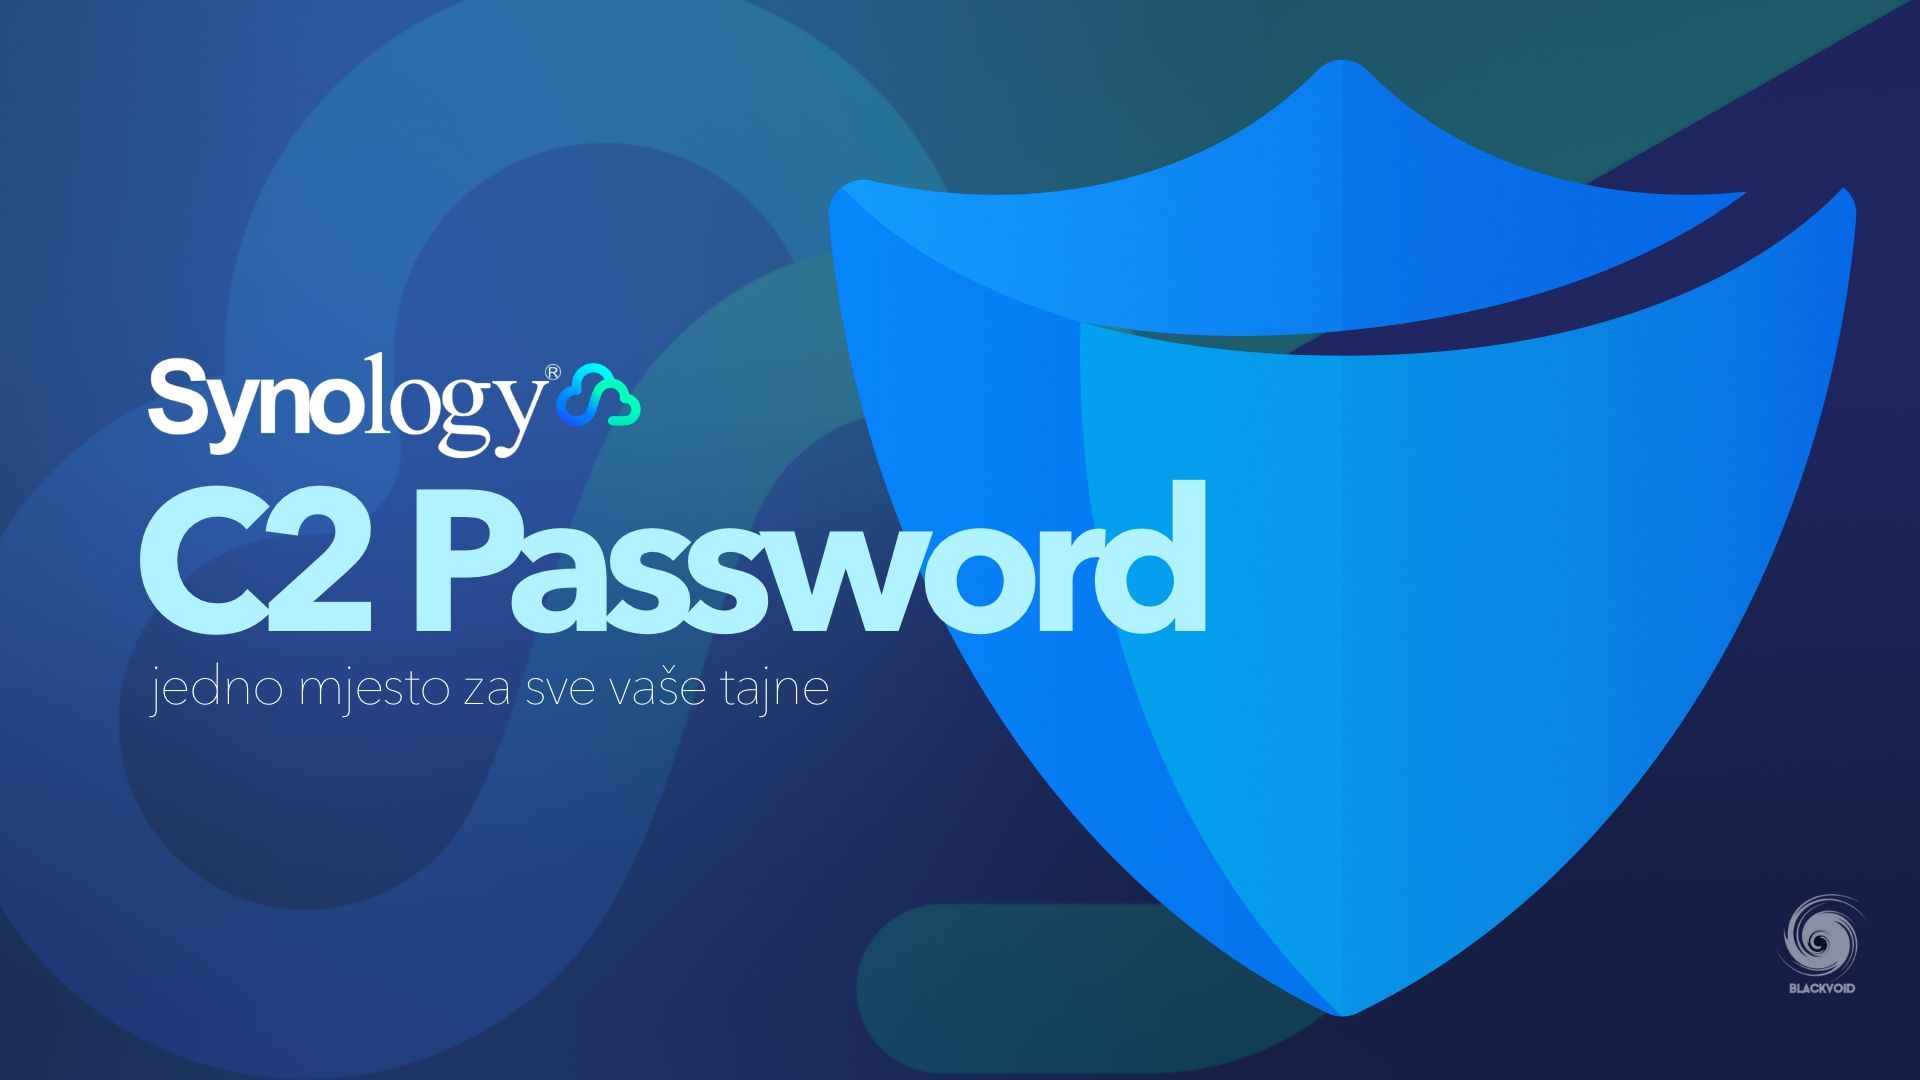 Synology C2 Password - jedno mjesto za sve vaše tajne